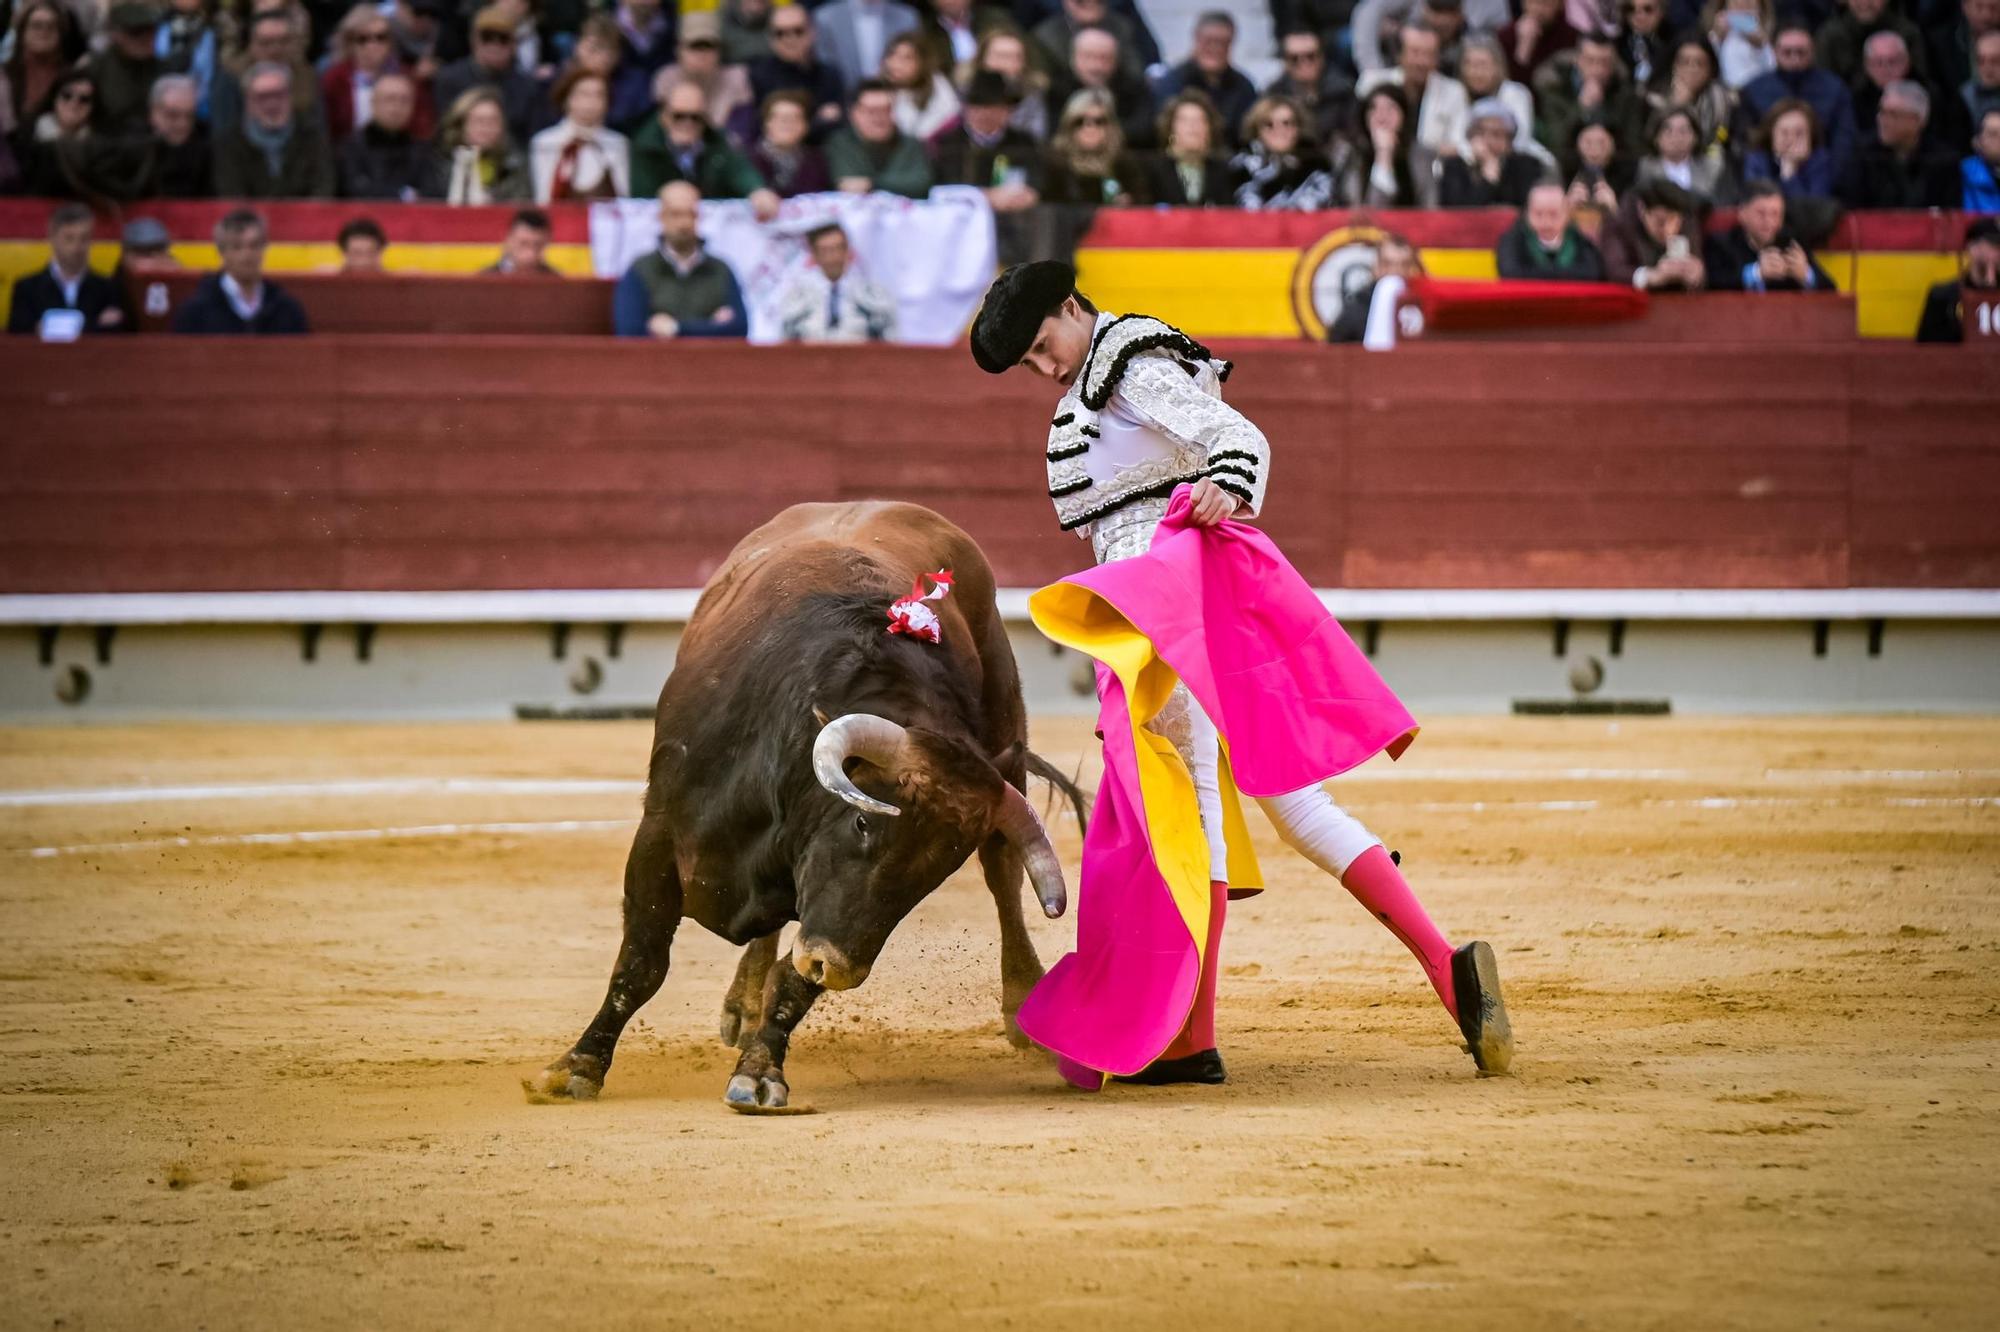 Tomás Rufo defiende su feudo de Castellón con tres orejas y Roca Rey lo acompaña a hombros